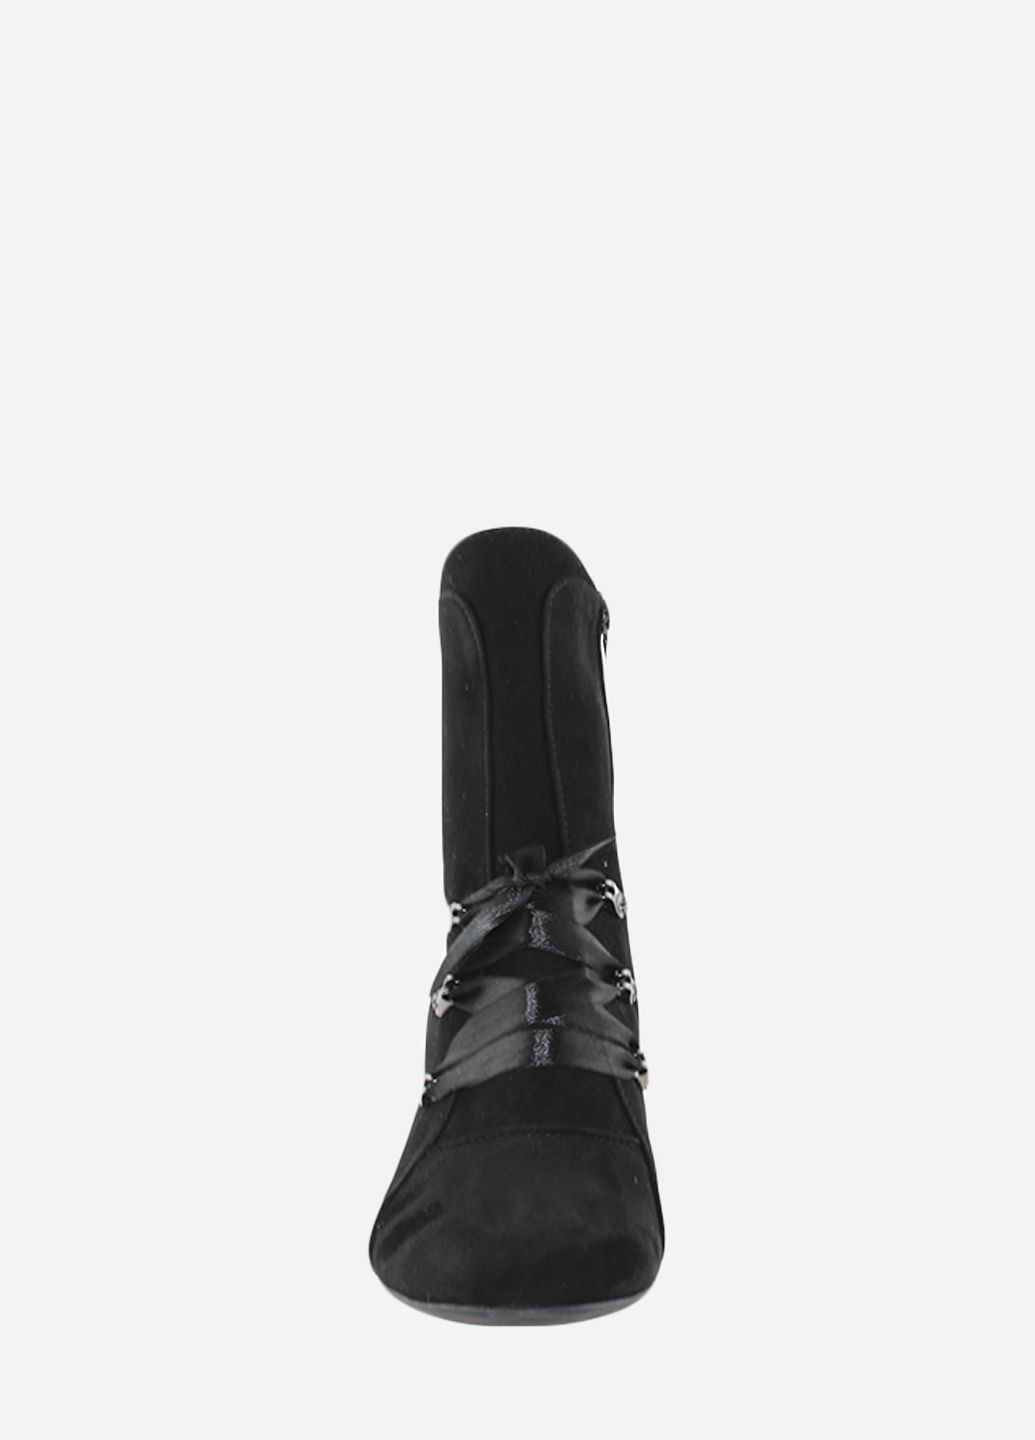 Осенние ботинки rk606-11 черный Kseniya из натуральной замши